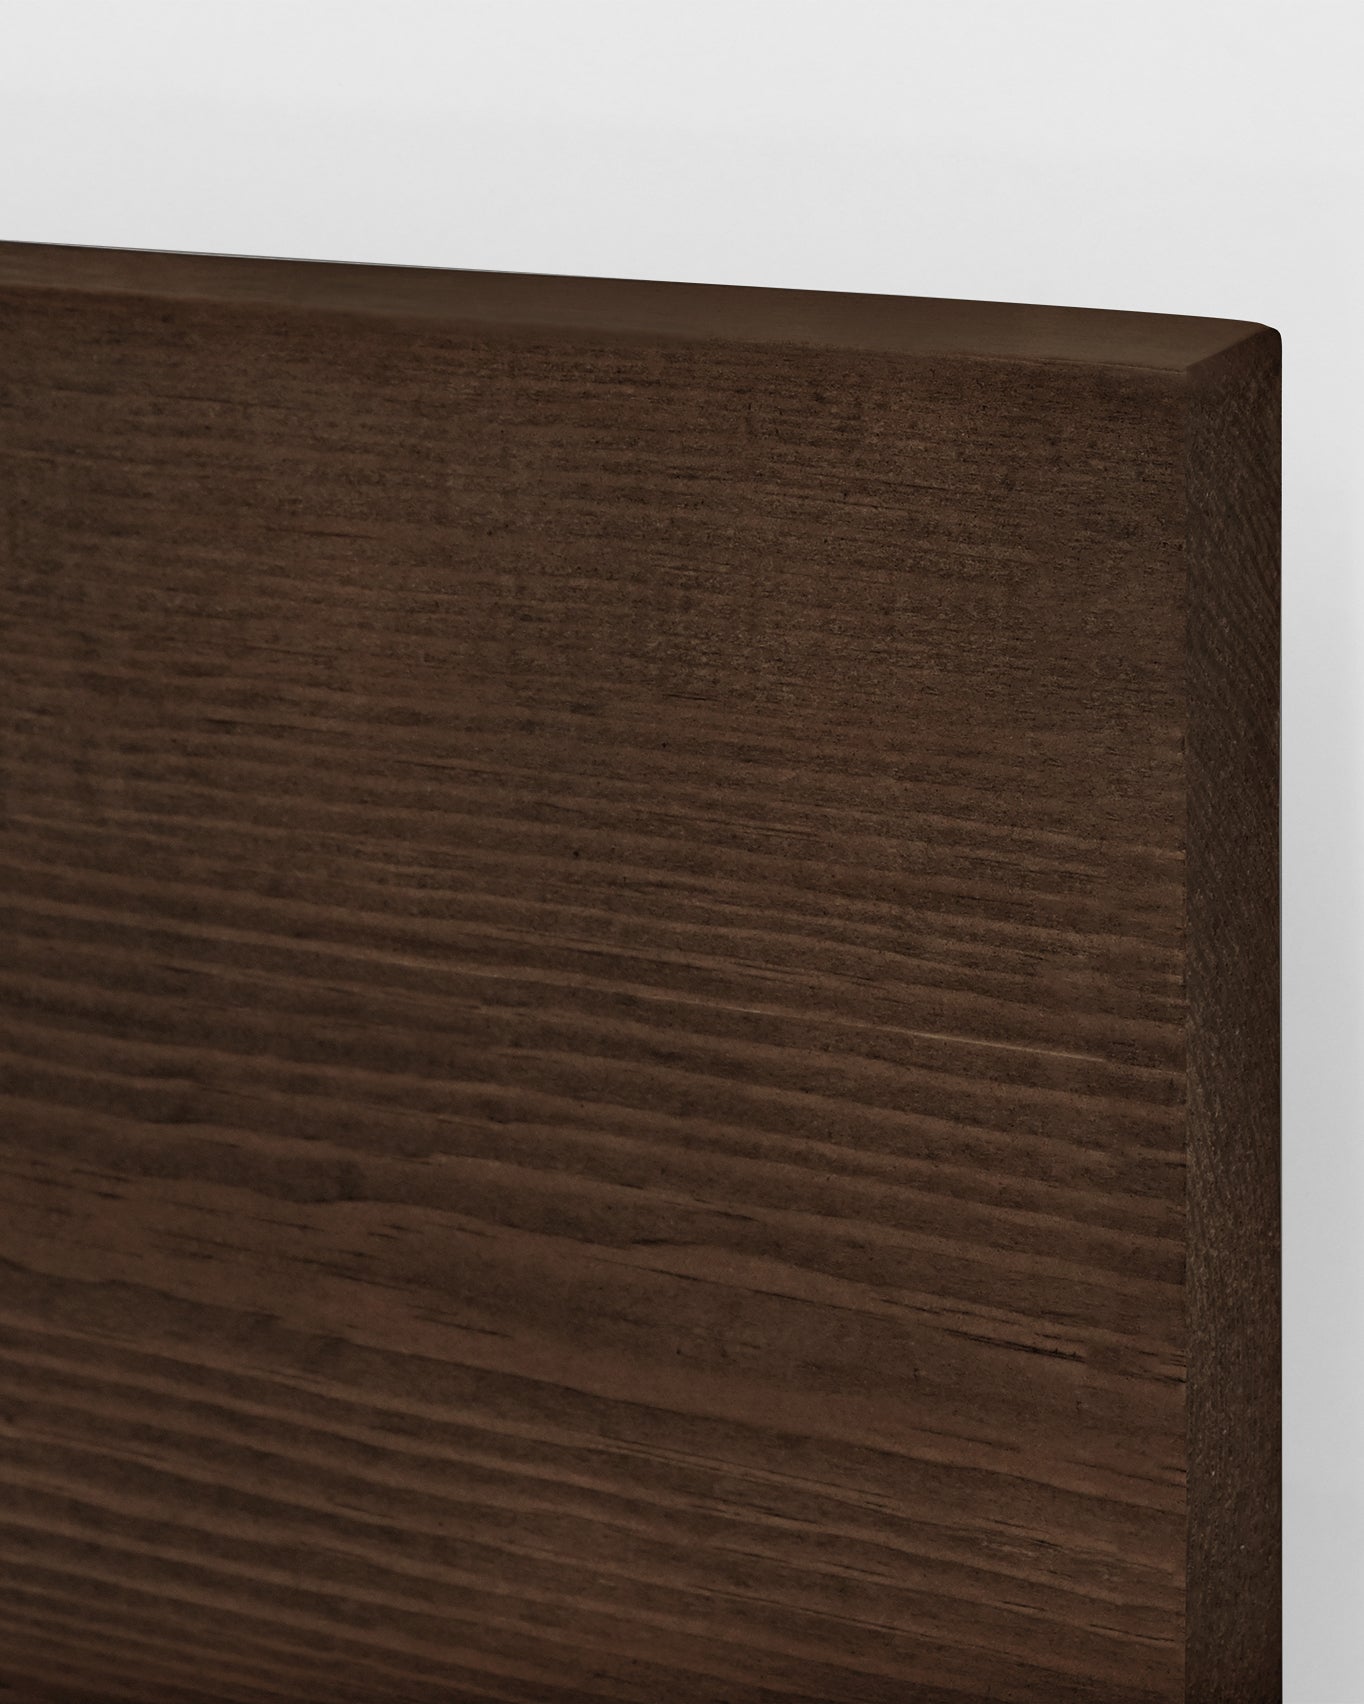 Cabecero de madera maciza en tono roble oscuro de 120x60cm - DECOWOOD